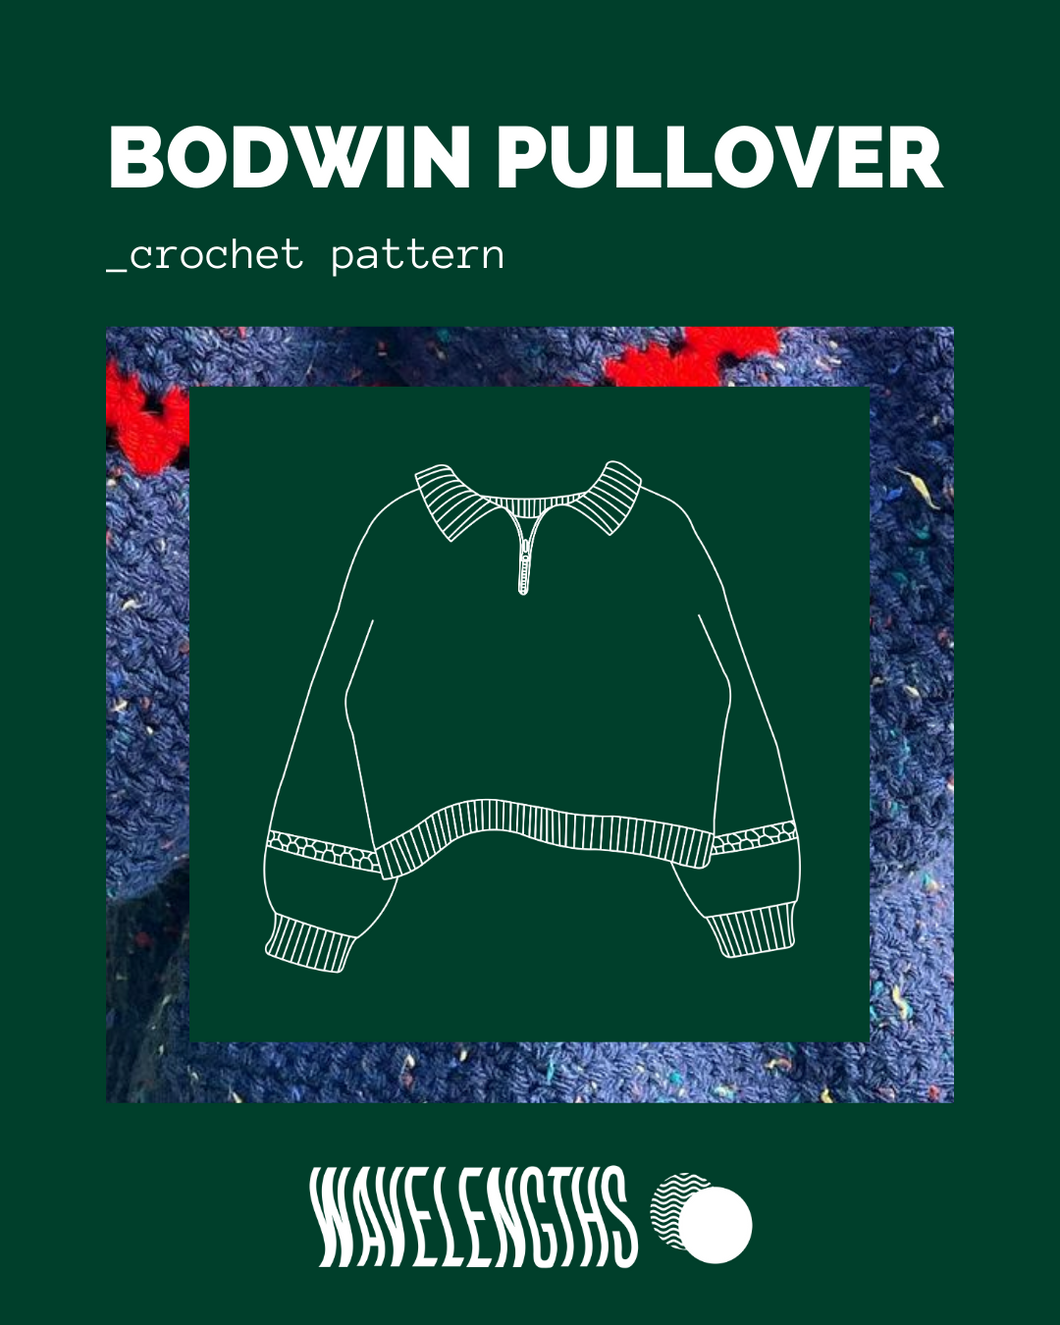 Bodwin Pullover Pattern